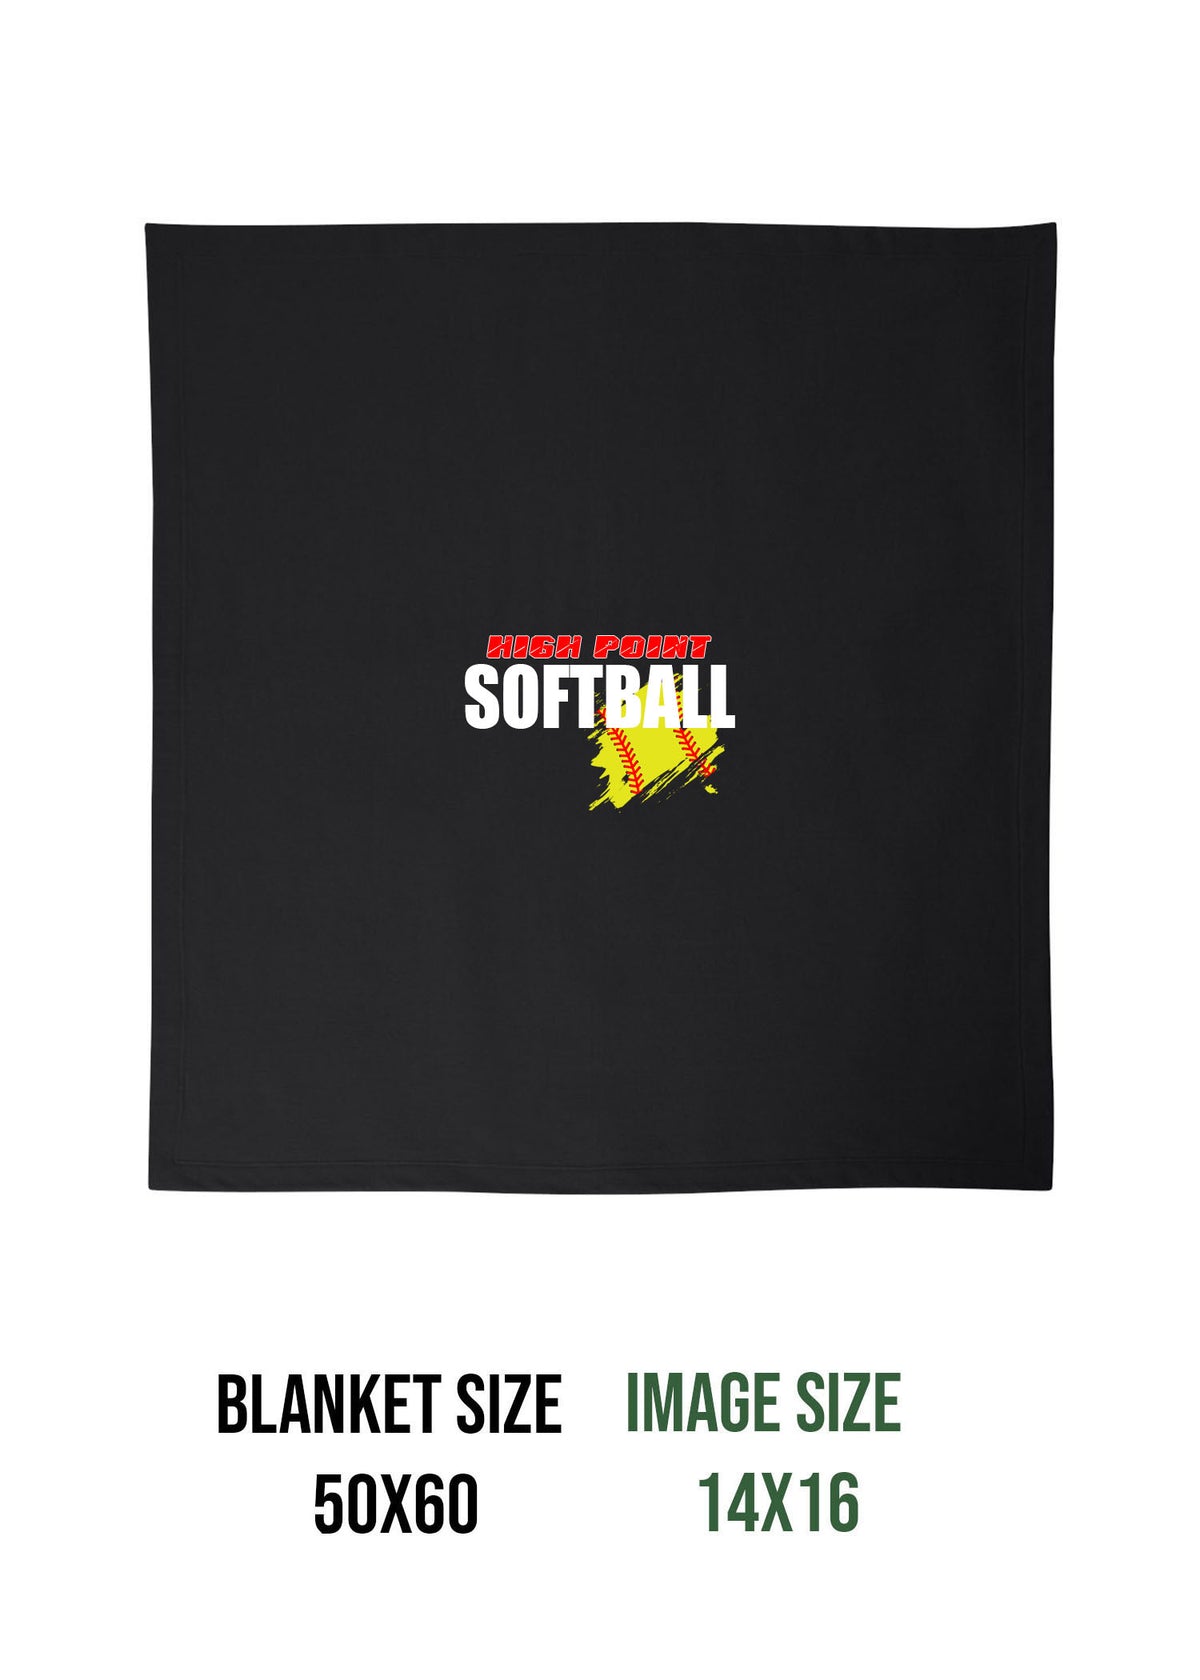 High Point Softball Design 3 Blanket